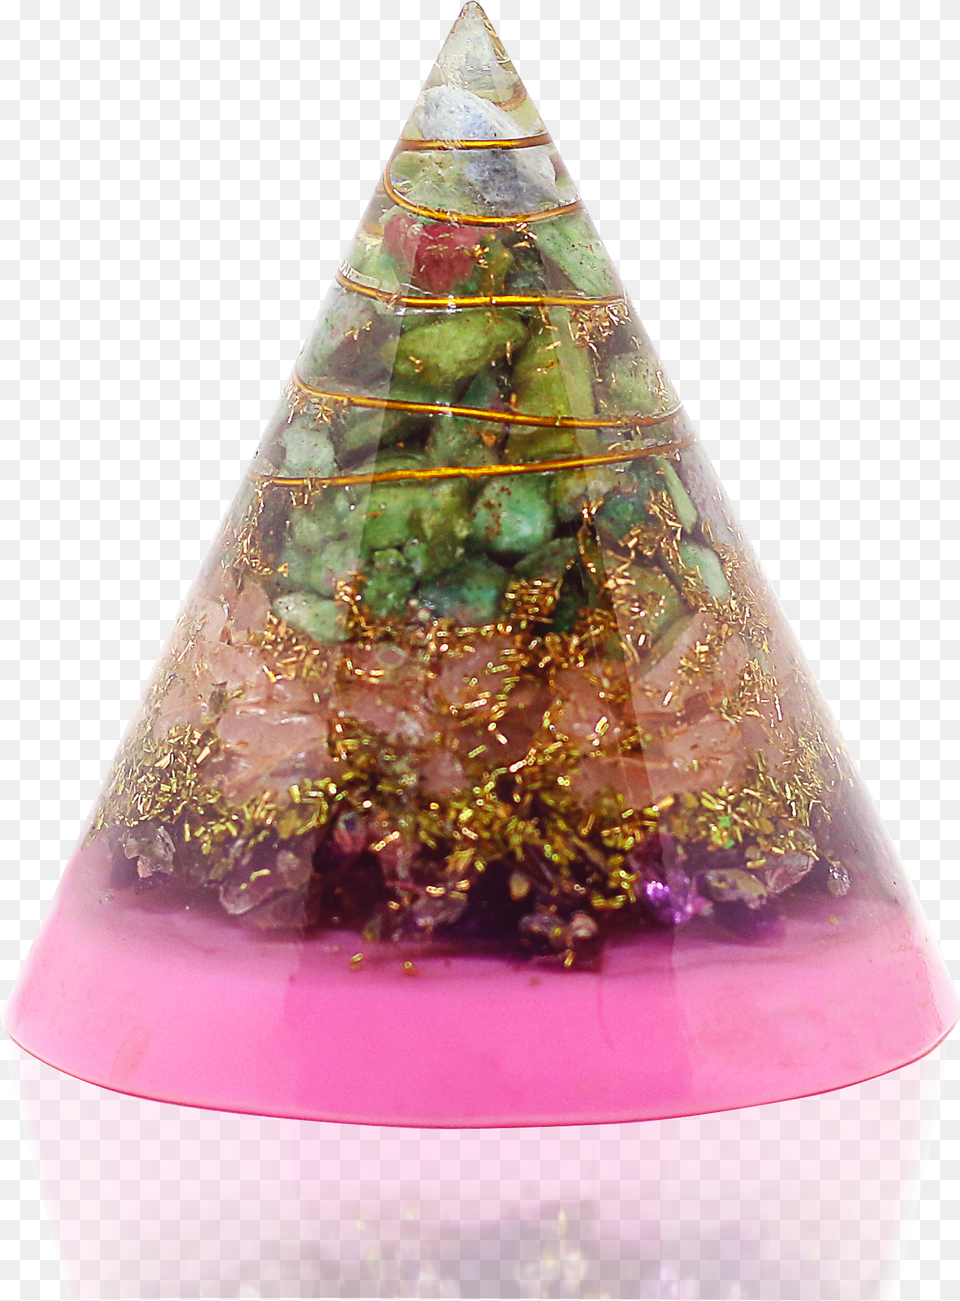 Pura Esprit Rose Quartz Ring Pyramid Sparkly, Clothing, Hat, Cone Free Transparent Png